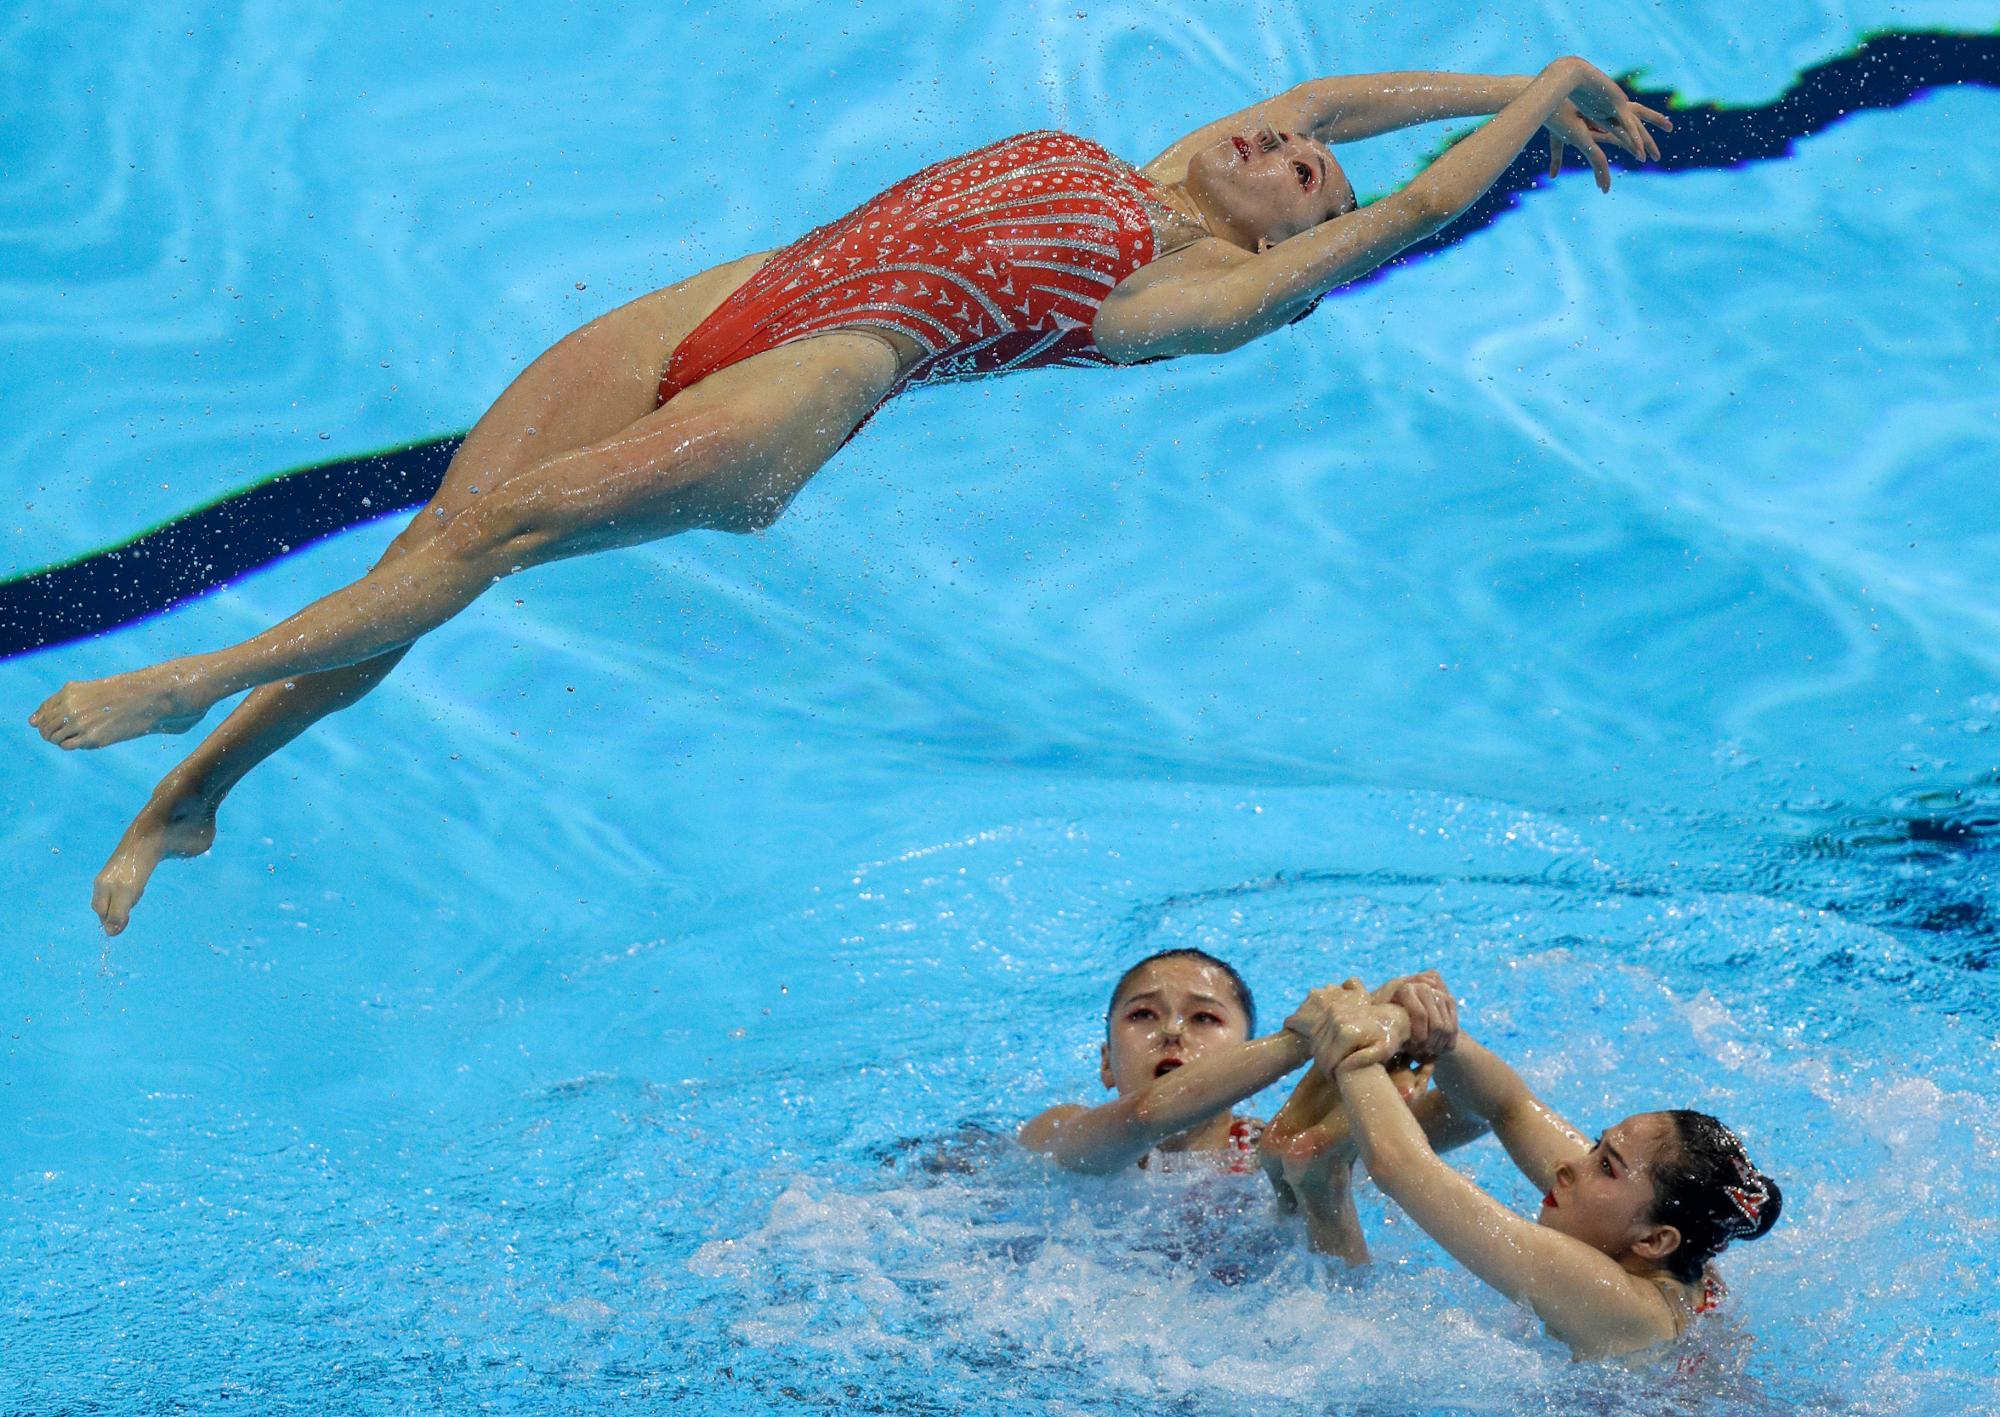 China realiza su rutina en la preparación técnica artística del equipo de natación en el Campeonato Mundial de Natación en Gwangju, Corea del Sur, domingo 14 de julio de 2019.